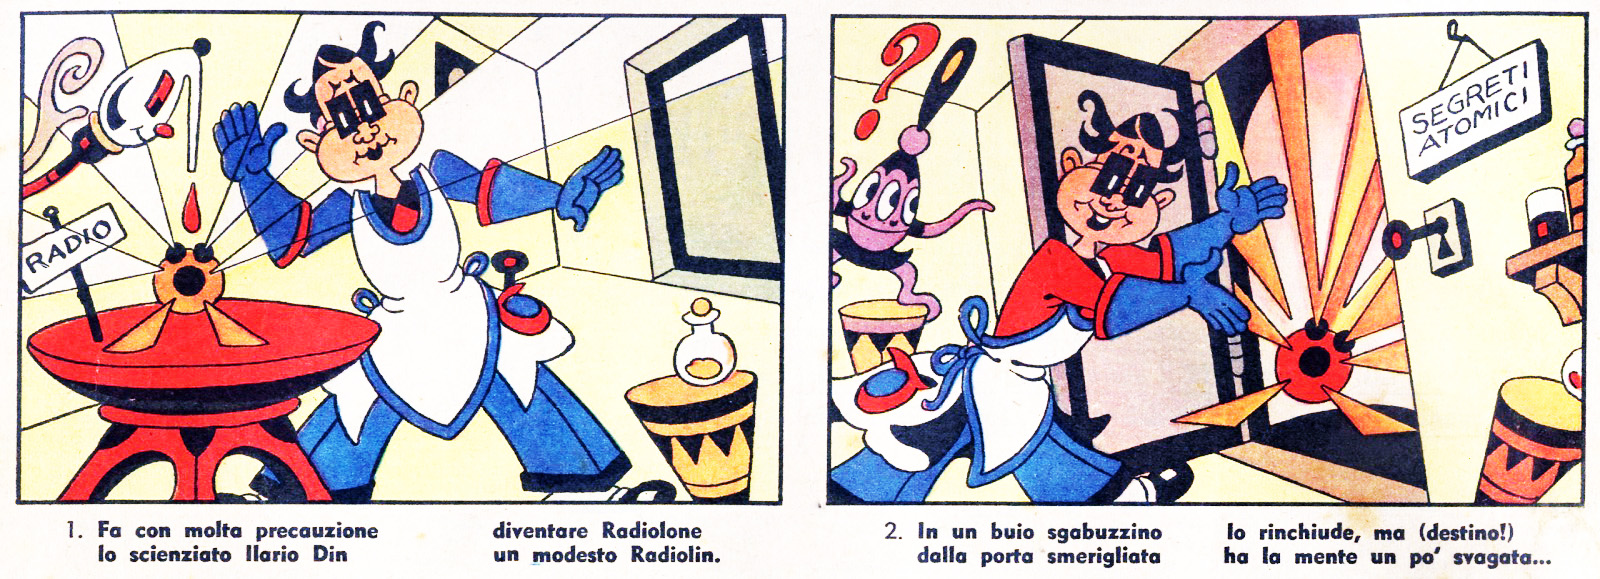 Antonio Rubino, Corriere dei Piccoli del 1 gennaio 1956